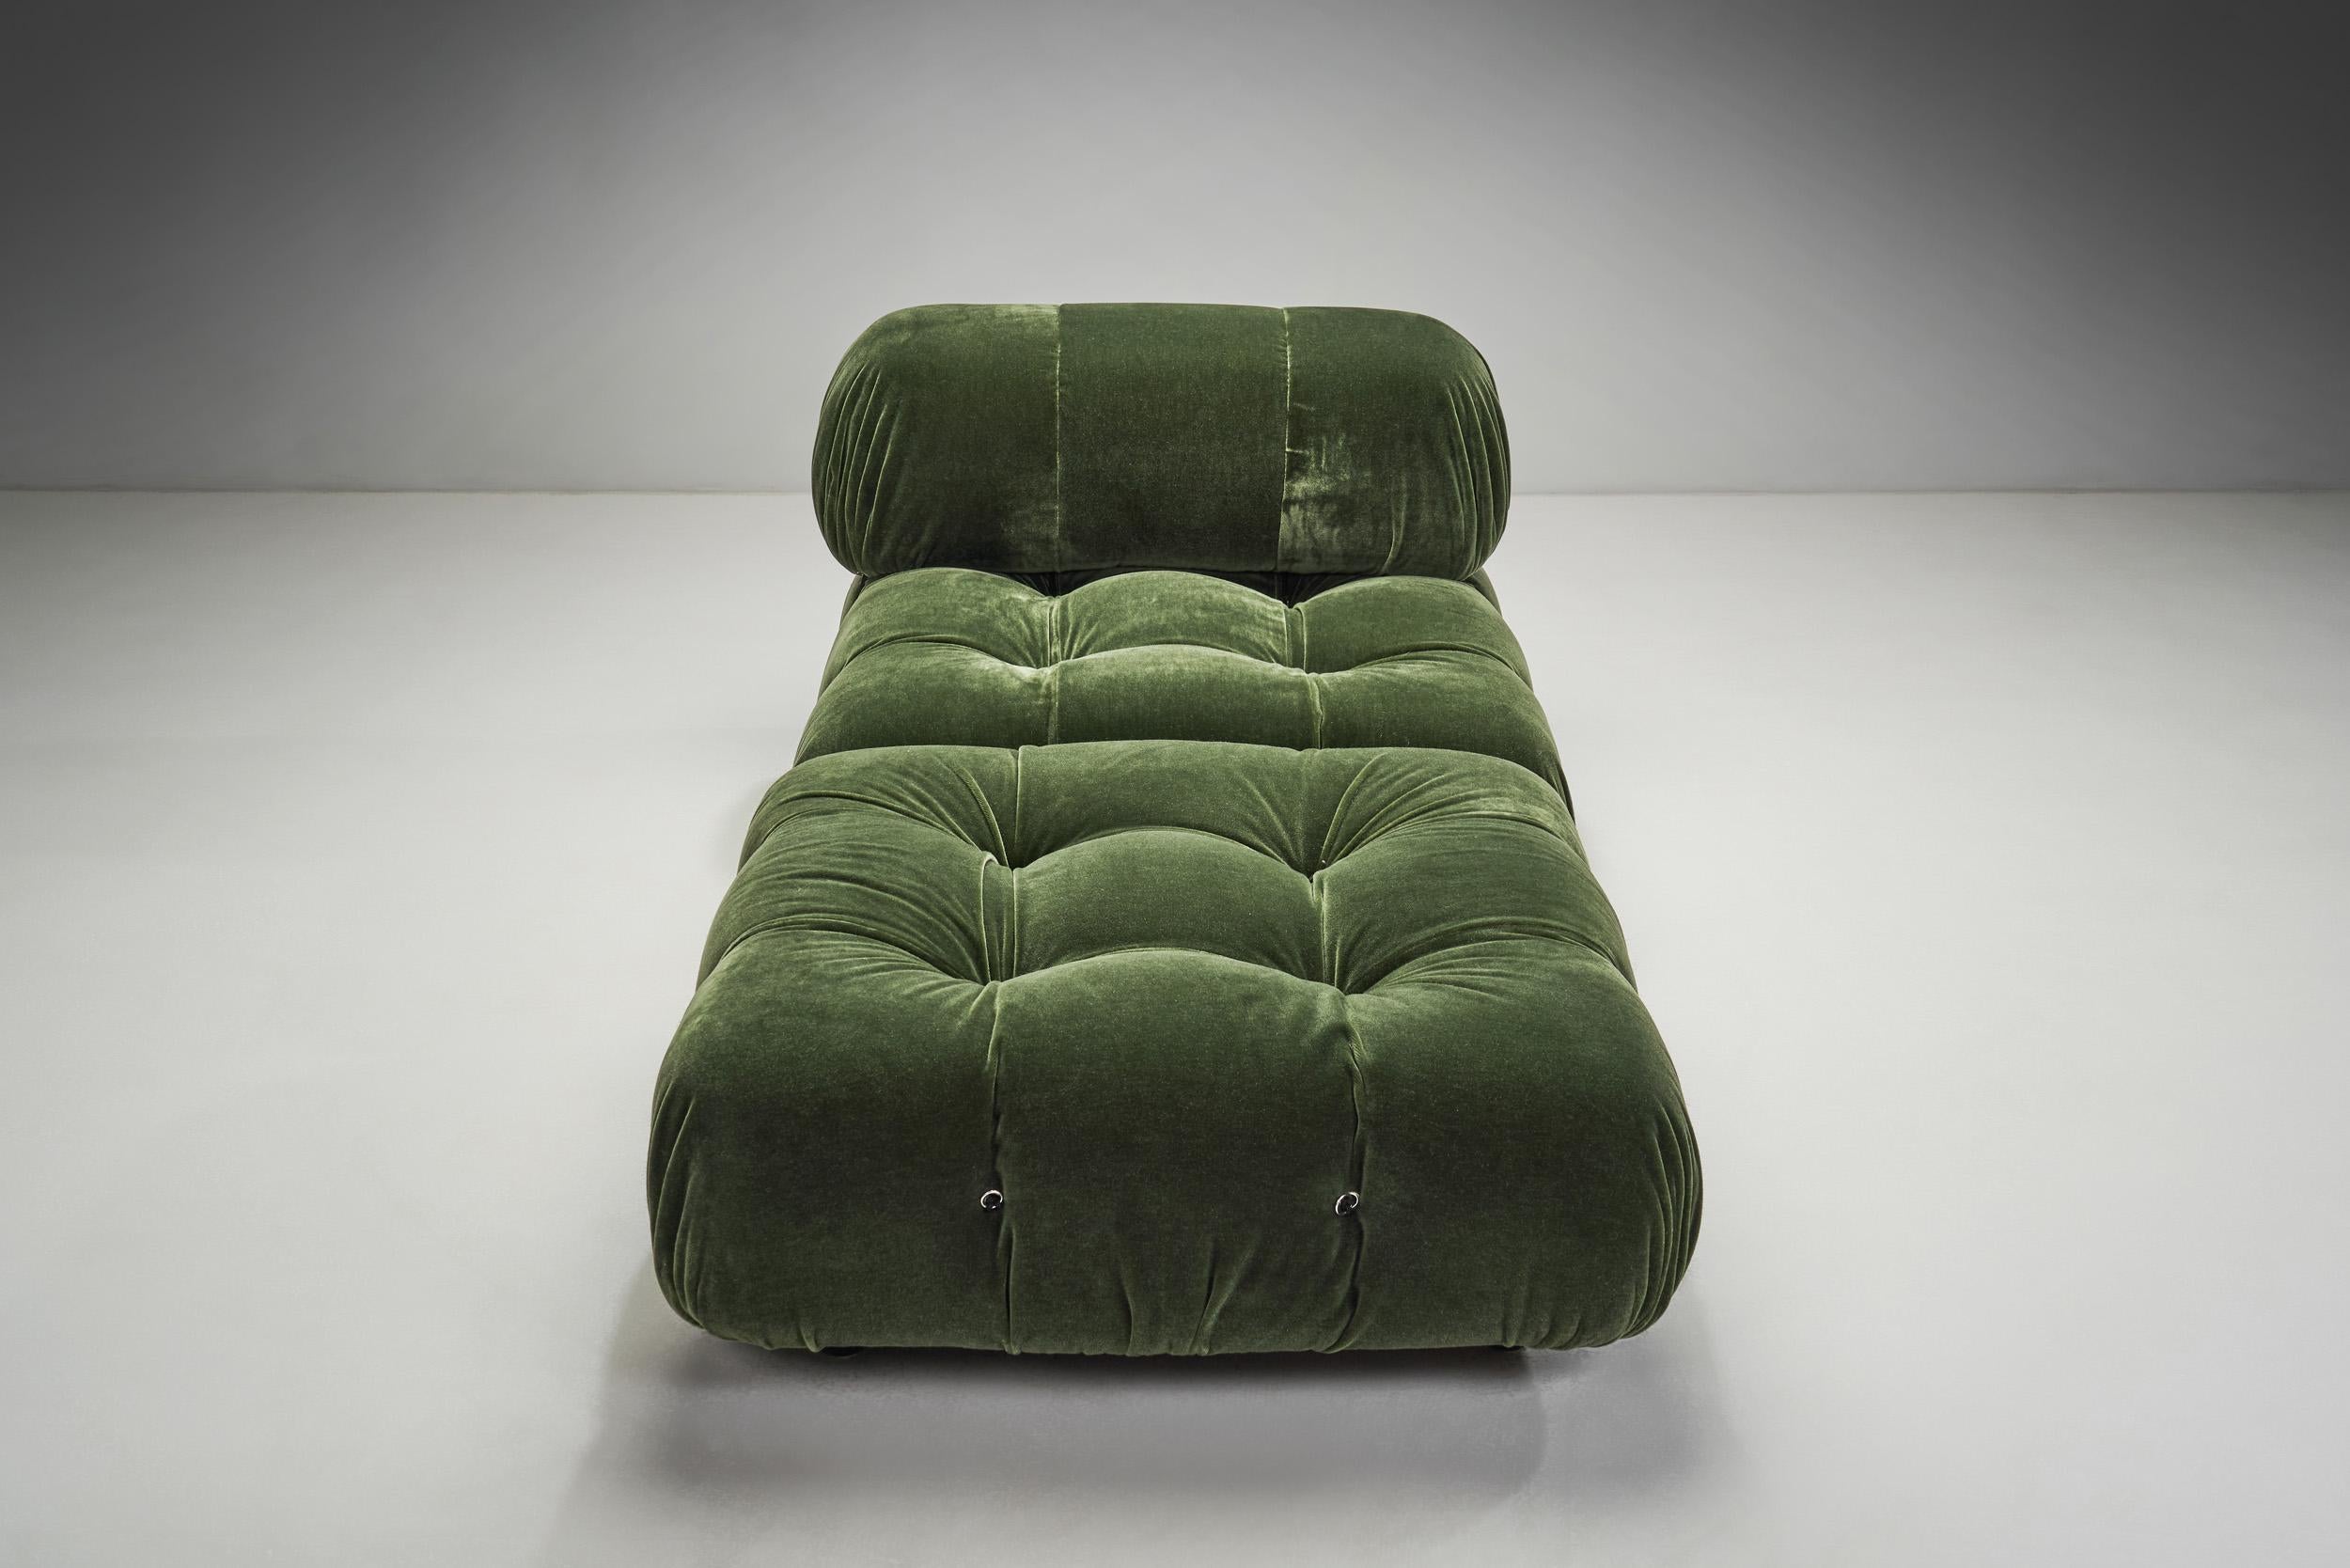 Fabric Modular “Camaleonda” Sofa in 4 Segments by Mario Bellini for B&B, Italy, 1971